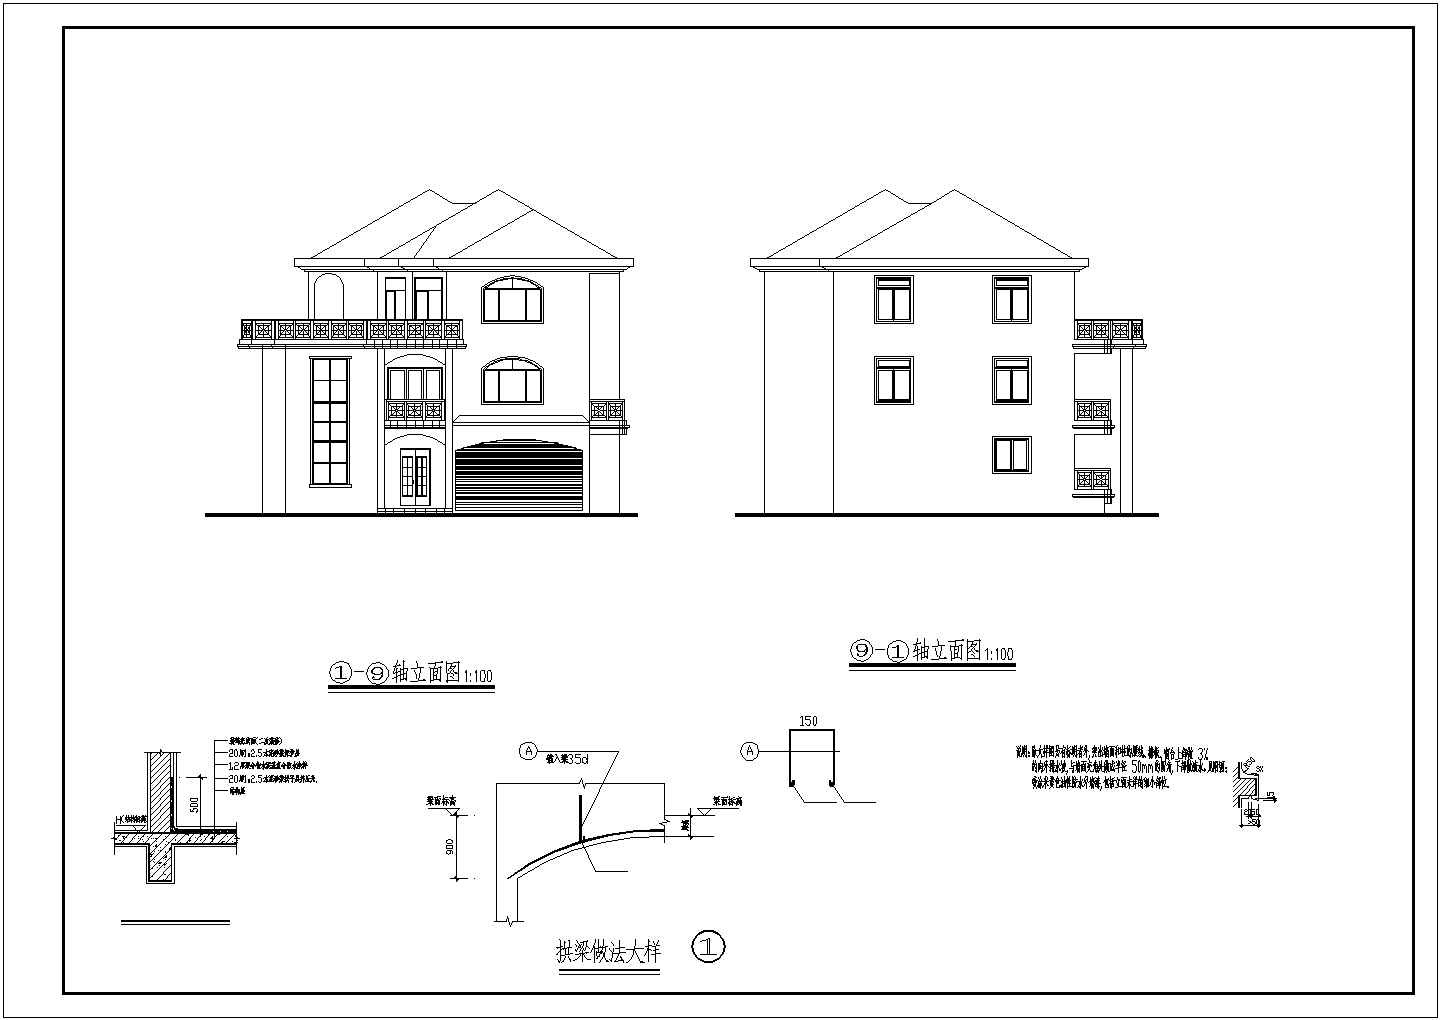 简单一点的三层住宅别墅建筑扩出图详细图纸